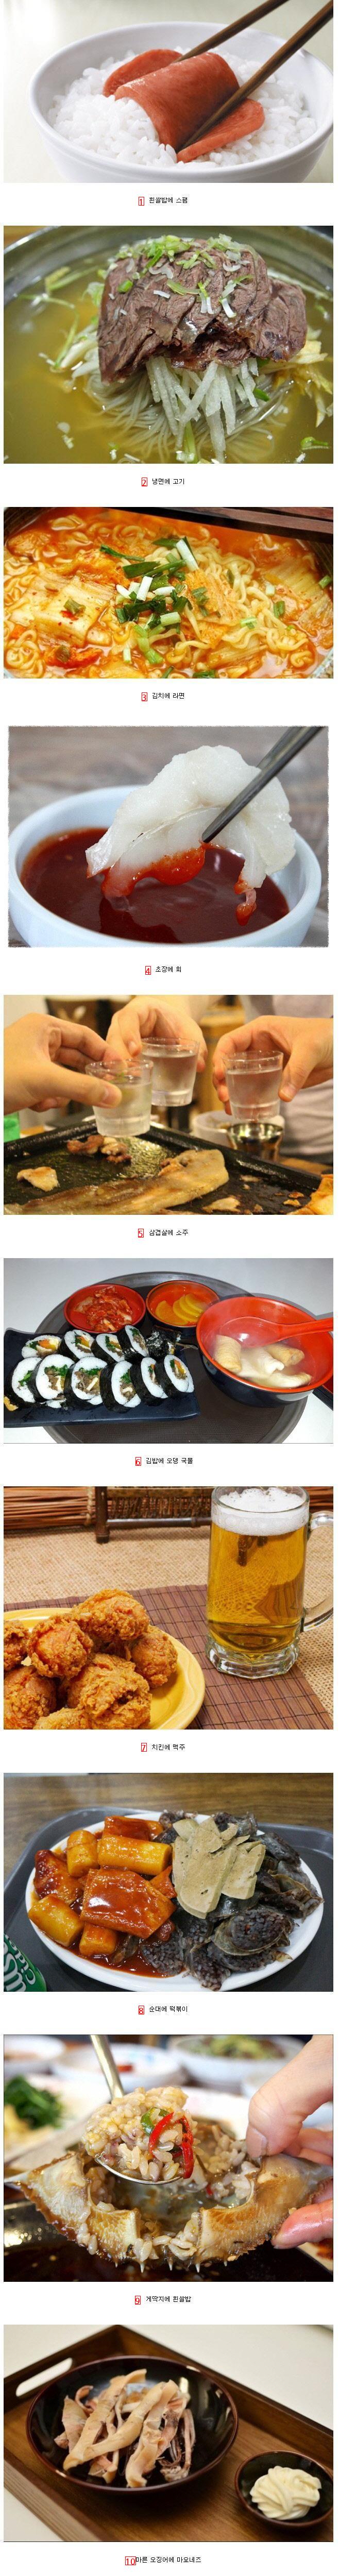 한국인 음식 맛궁합